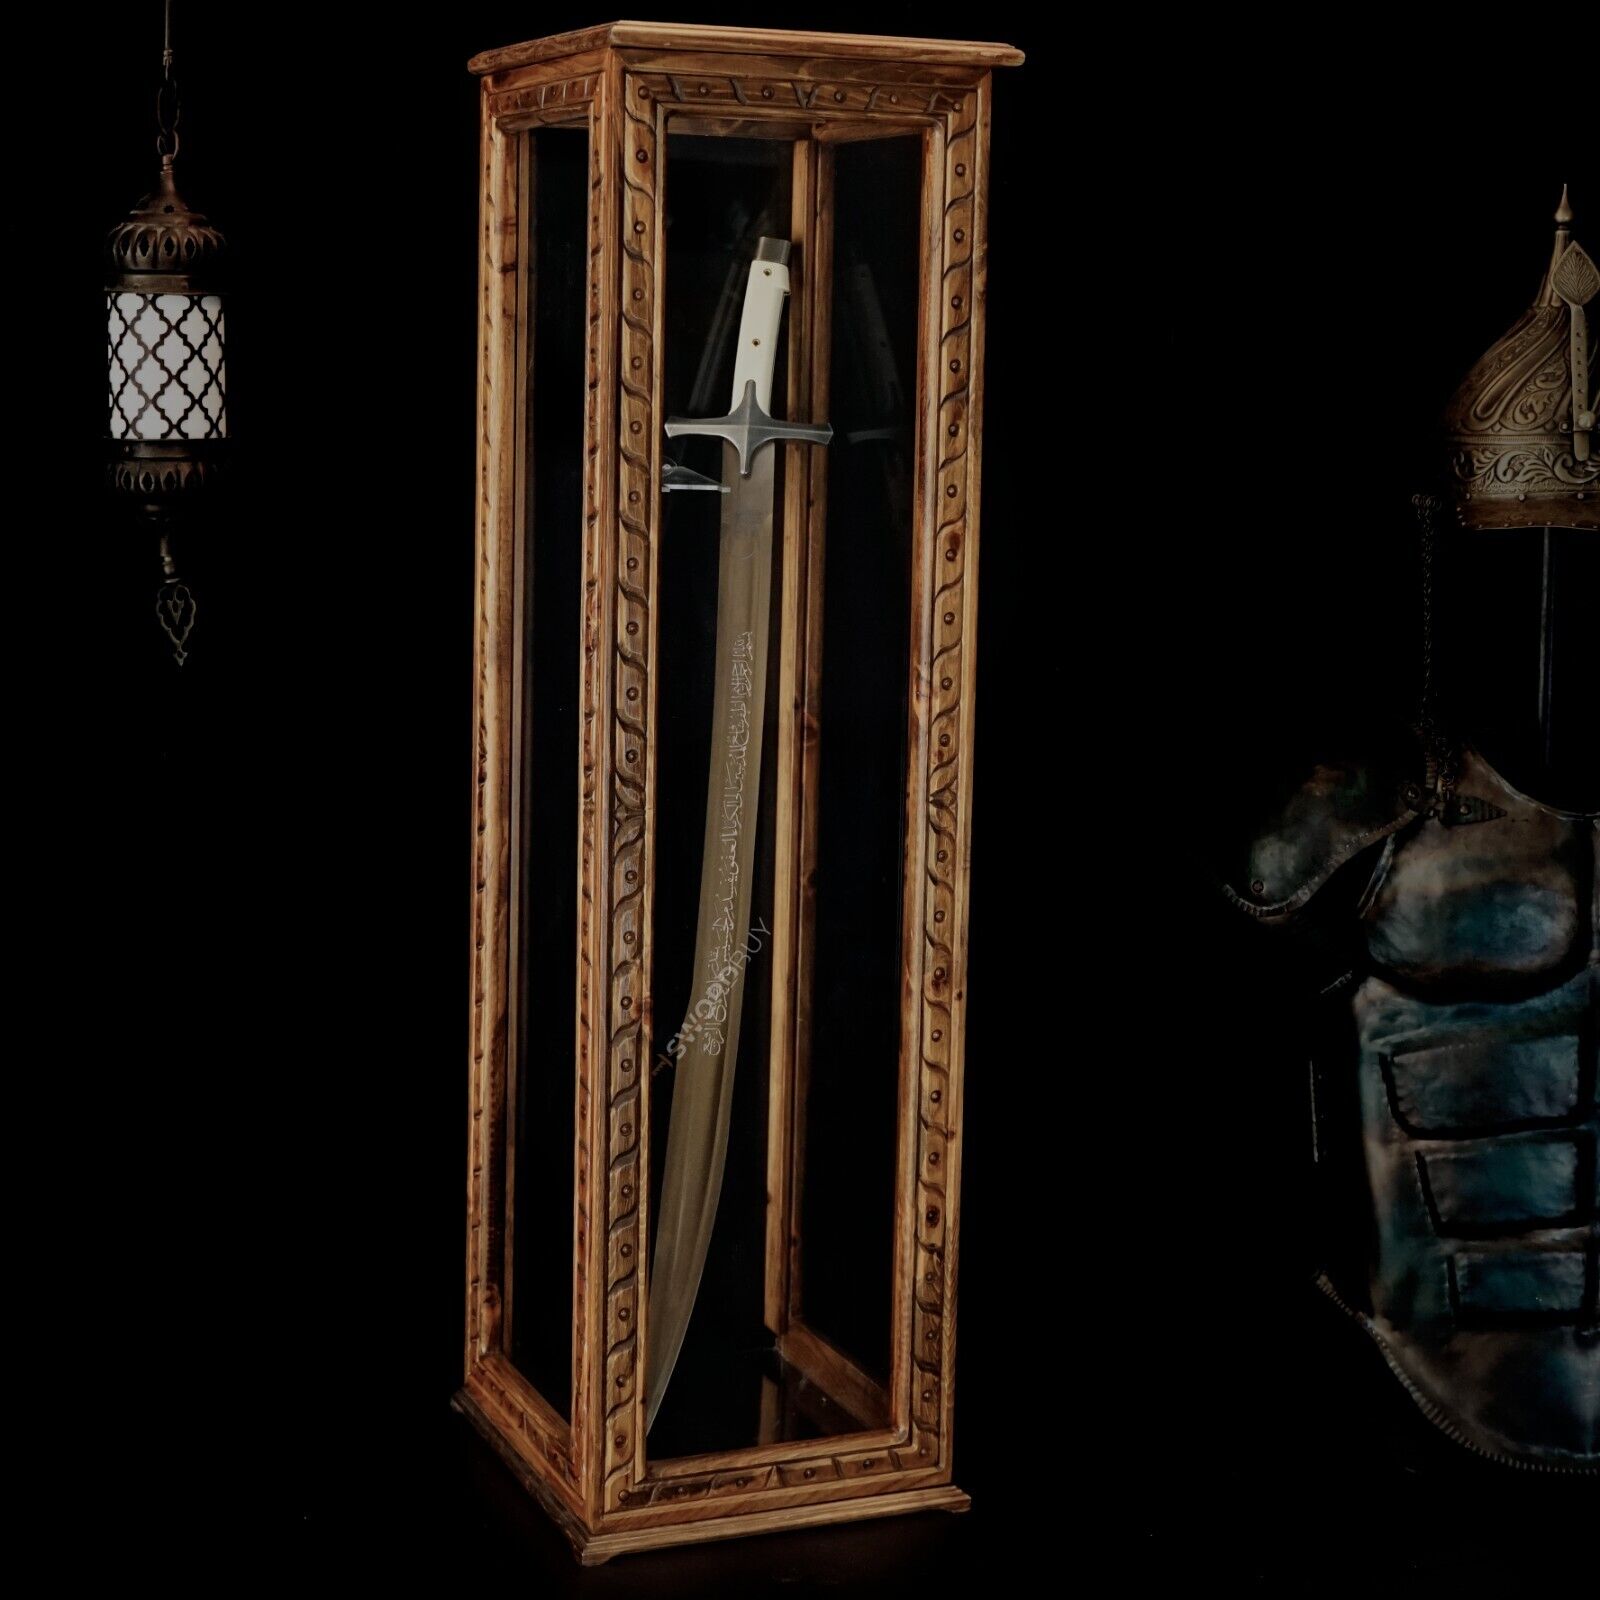 Ottoman Sword with Display Box, Handmade Real Ottoman Sword, Sword for Sale